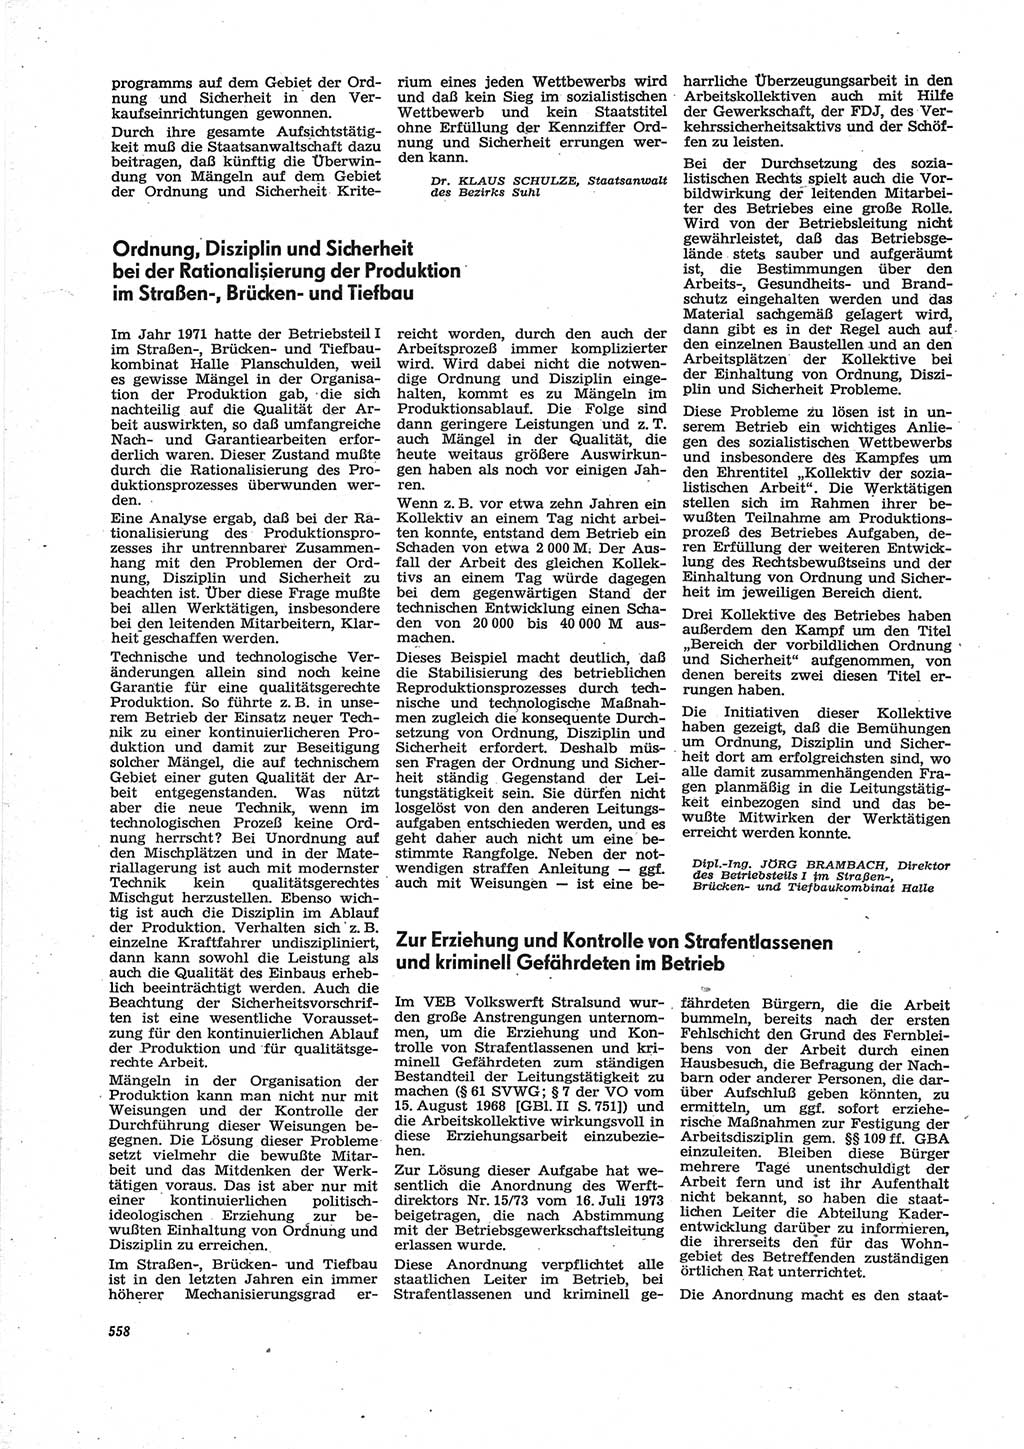 Neue Justiz (NJ), Zeitschrift für Recht und Rechtswissenschaft [Deutsche Demokratische Republik (DDR)], 28. Jahrgang 1974, Seite 558 (NJ DDR 1974, S. 558)